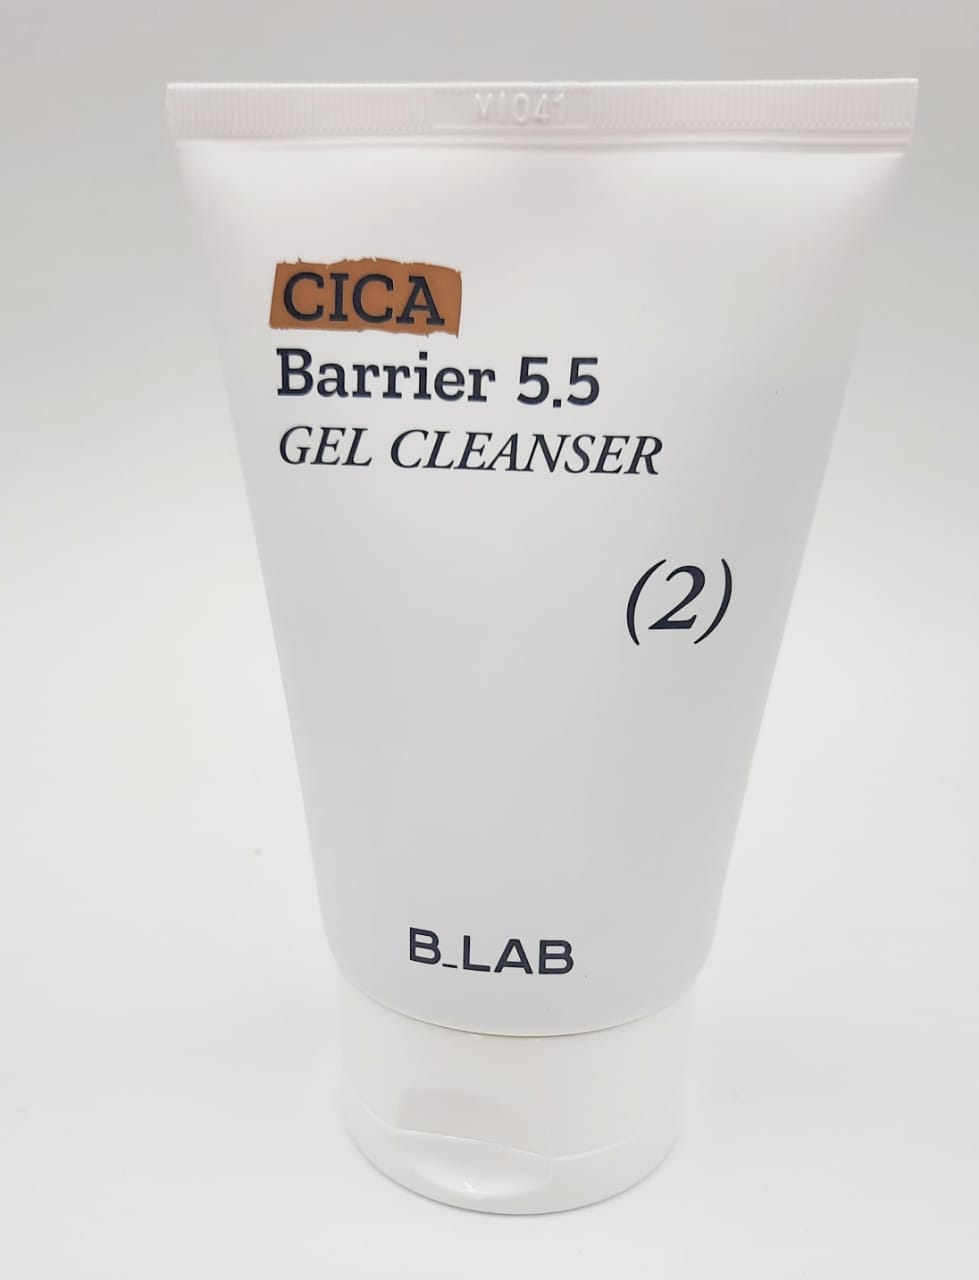 Очищающий слабокислотный гель для умывания B.Lab Cica Barrier 5.5 Gel Cleanser